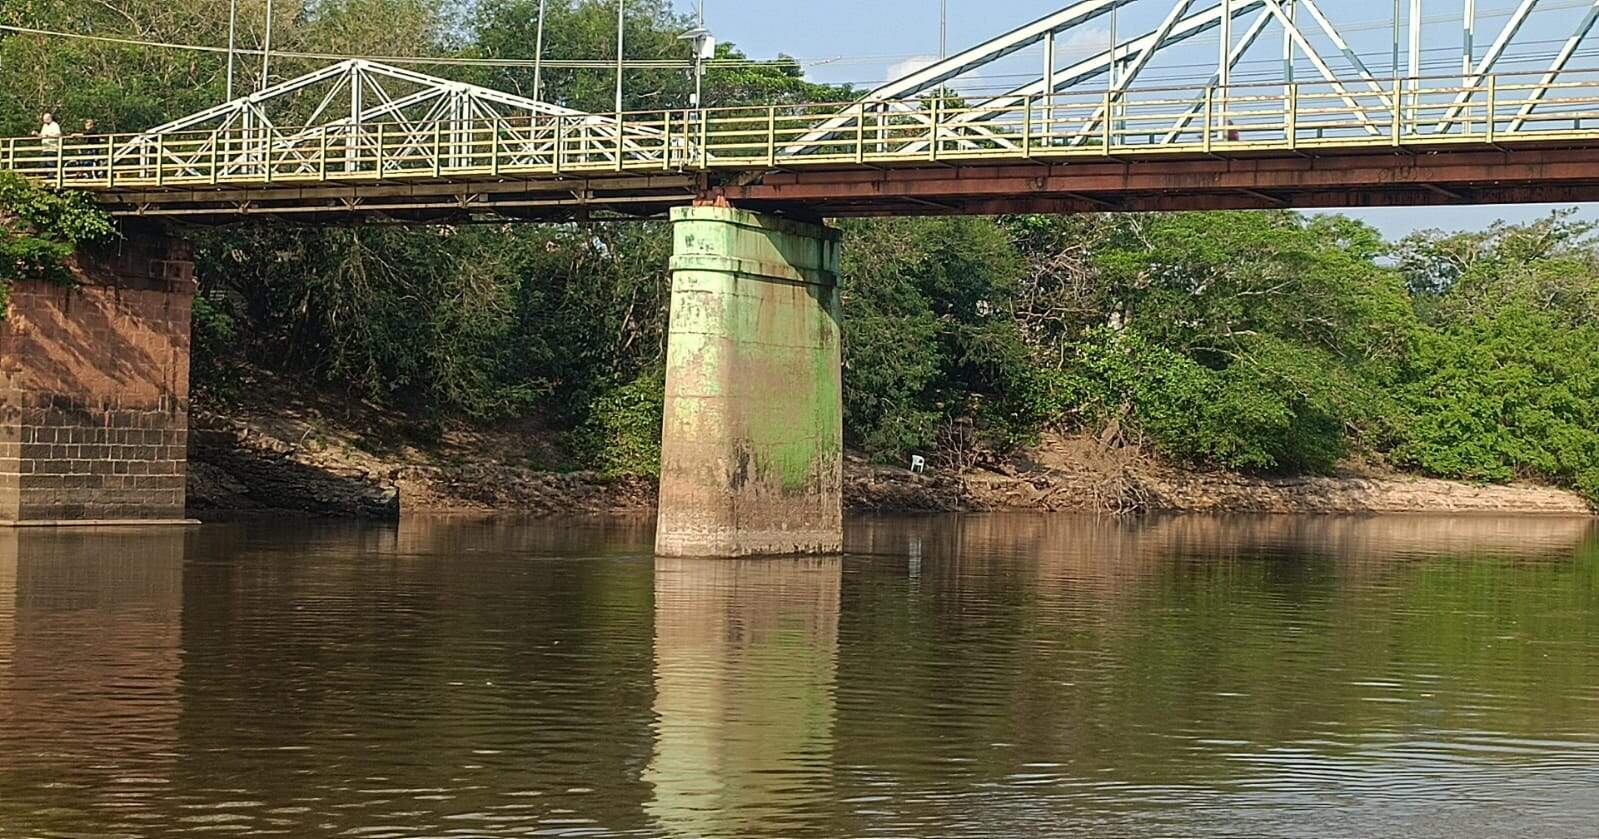 Bombeiro à paisana impede mulher de pular de ponte em rio